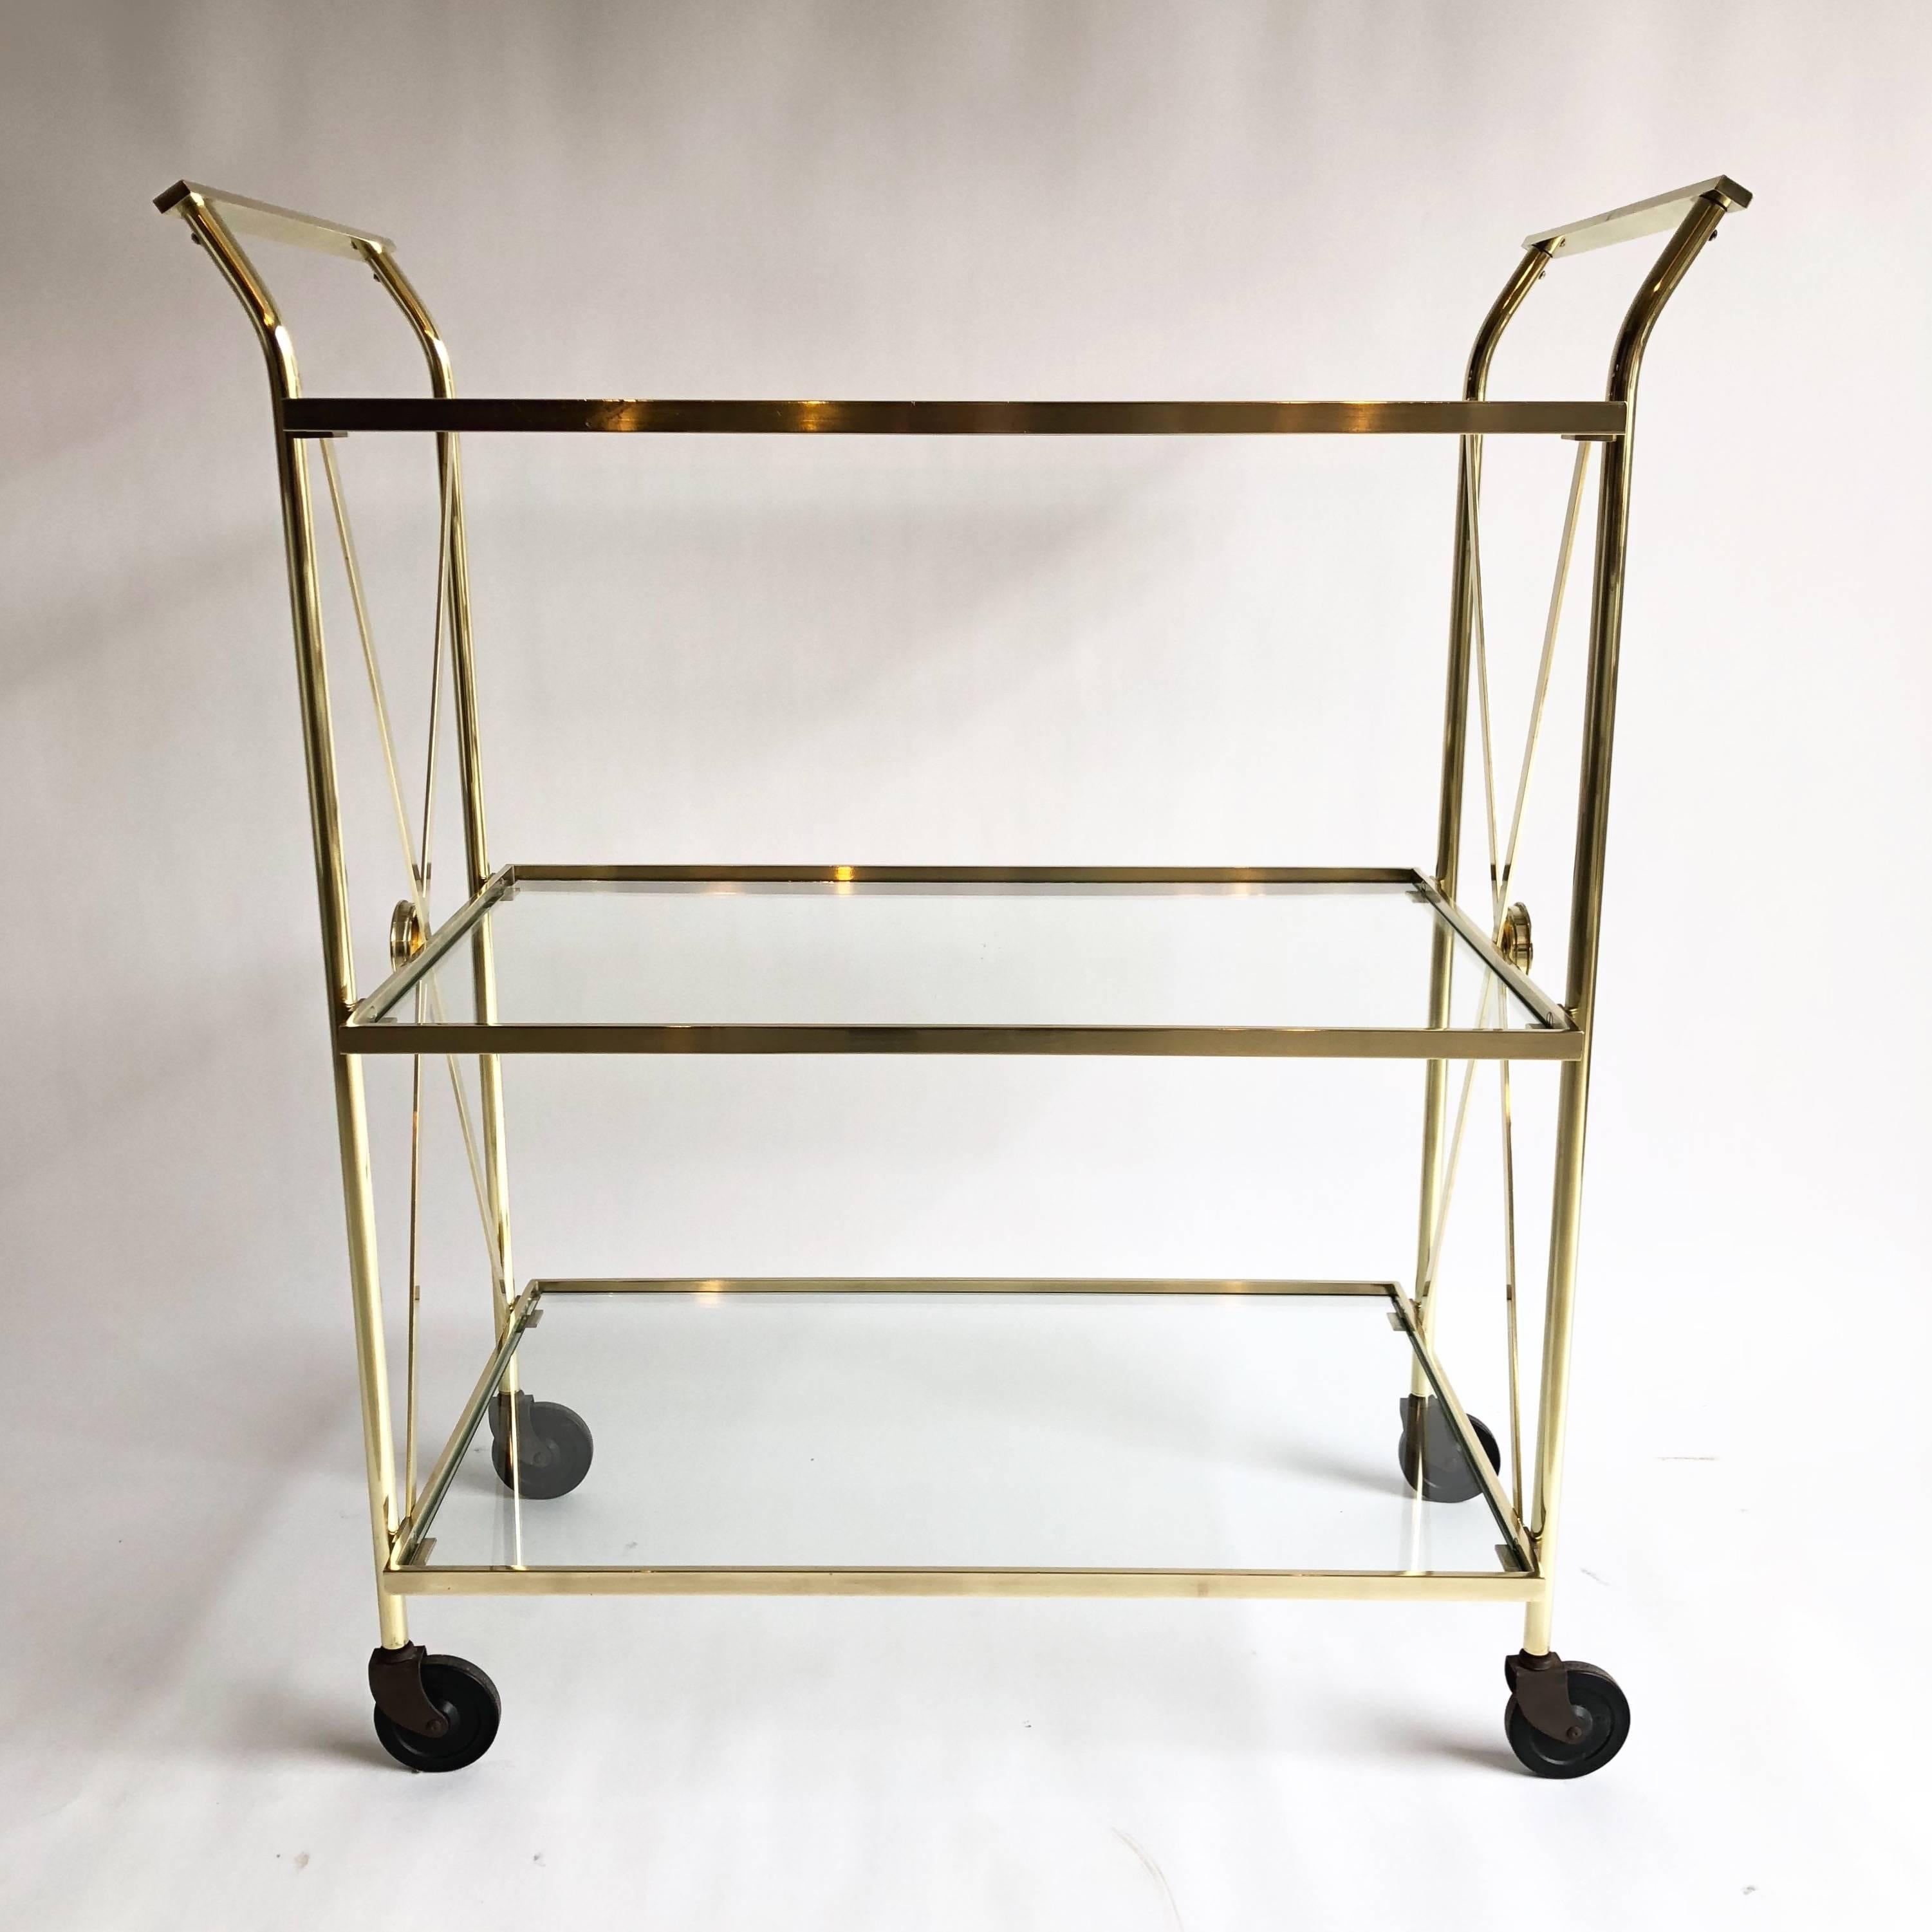 Three-tier brass bar cart with glass shelves.